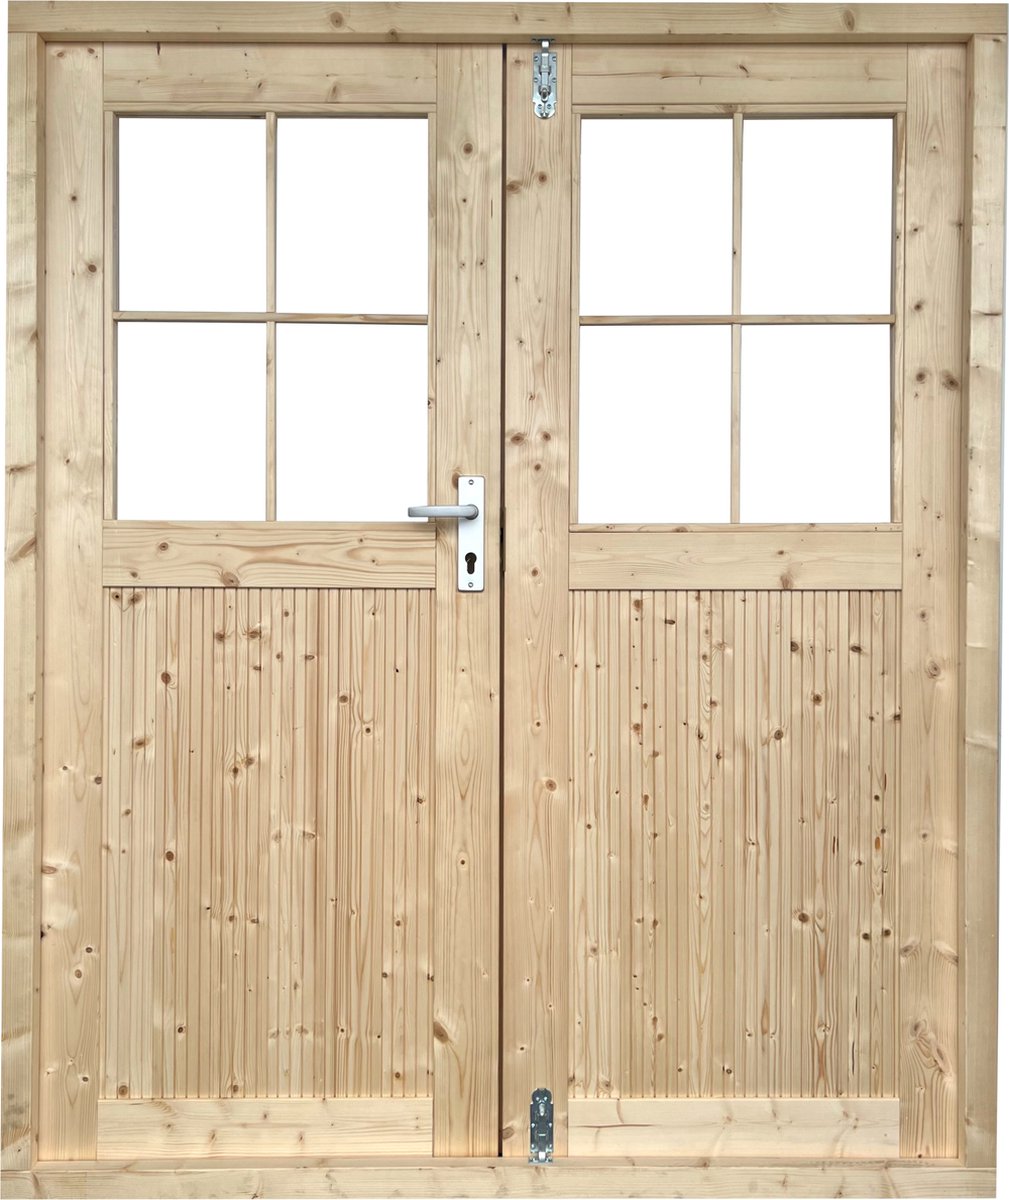 EASTWALL Double log cabin doors pine wood 171 x 180 cm Garden door including hinges and locks, Including frames